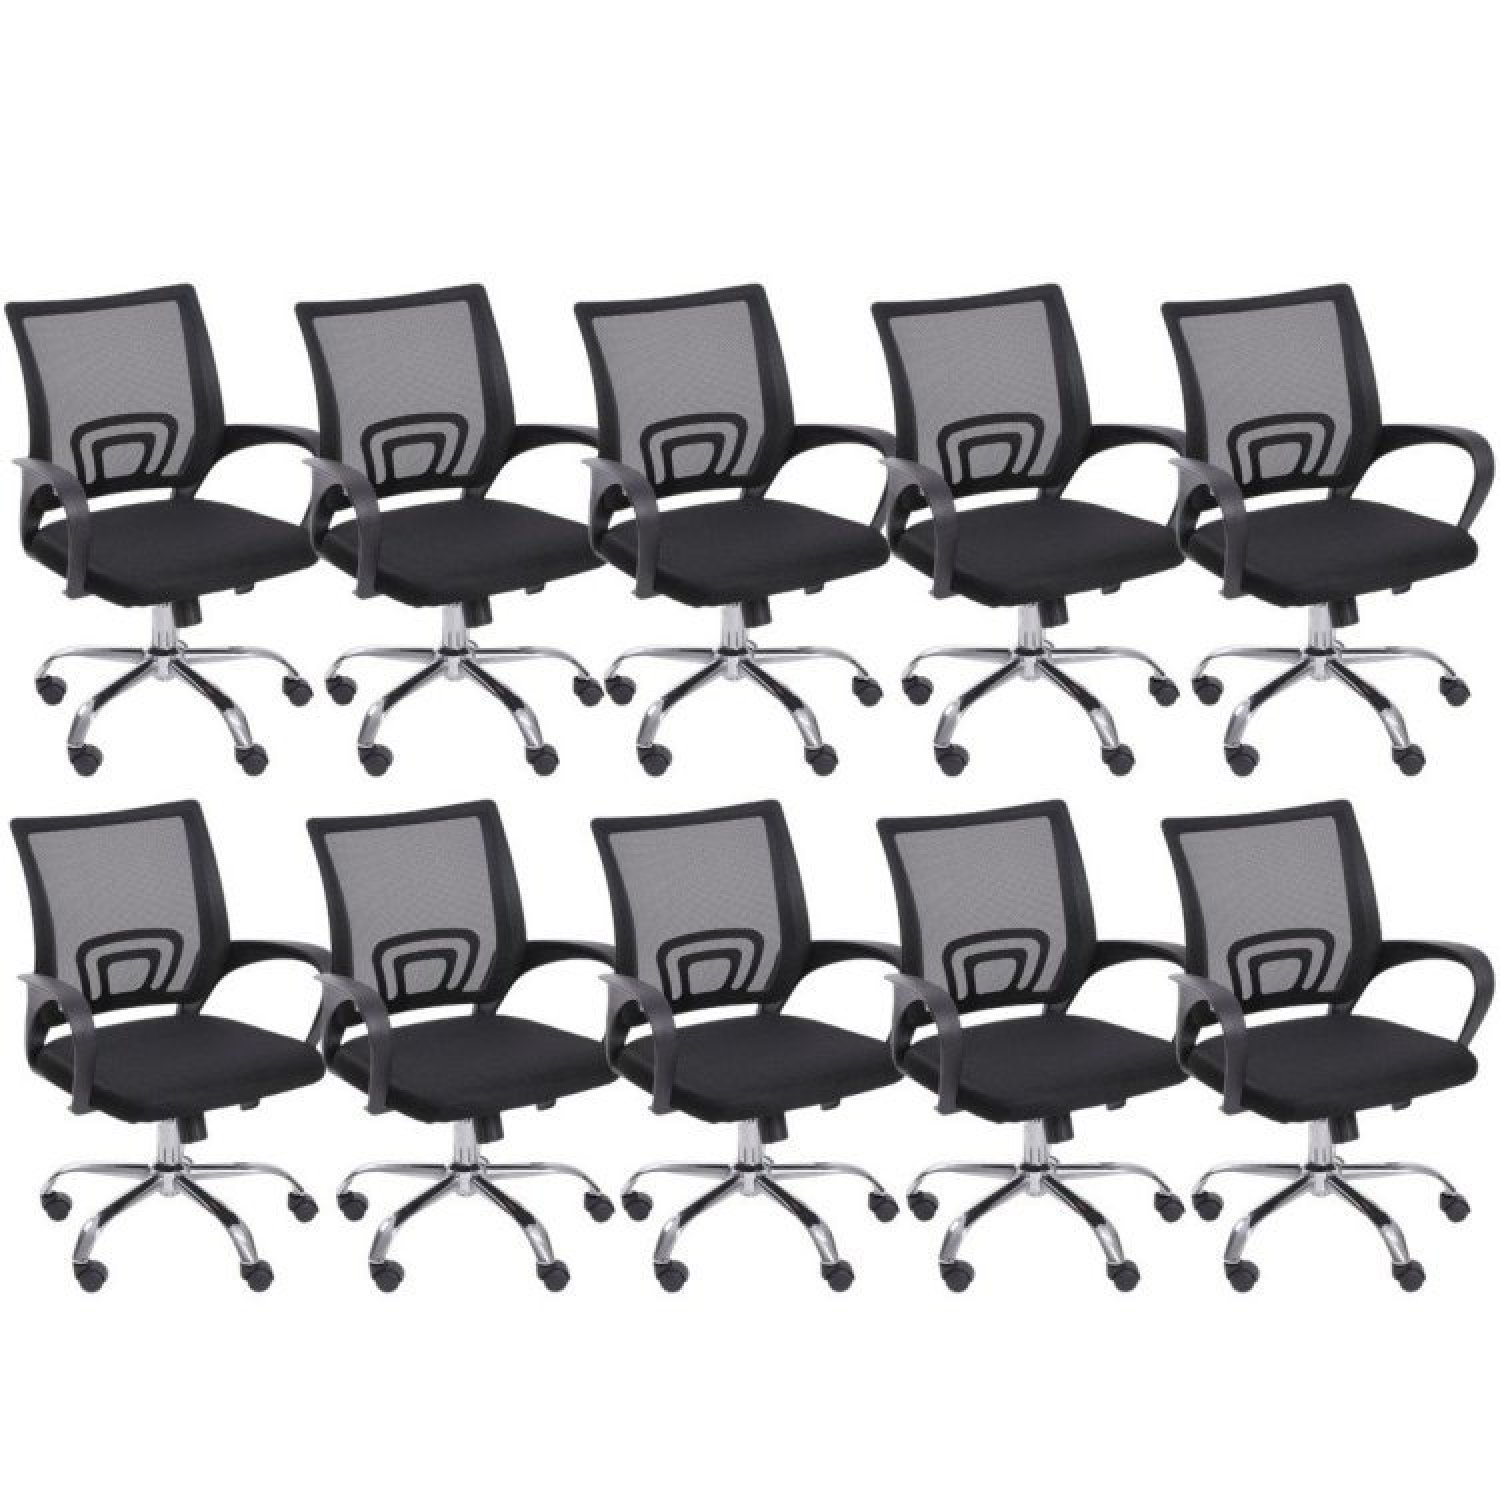 Kit 10 Cadeiras para Escritório Diretor Giratória com Relax Tok 3310 OR Design - 1